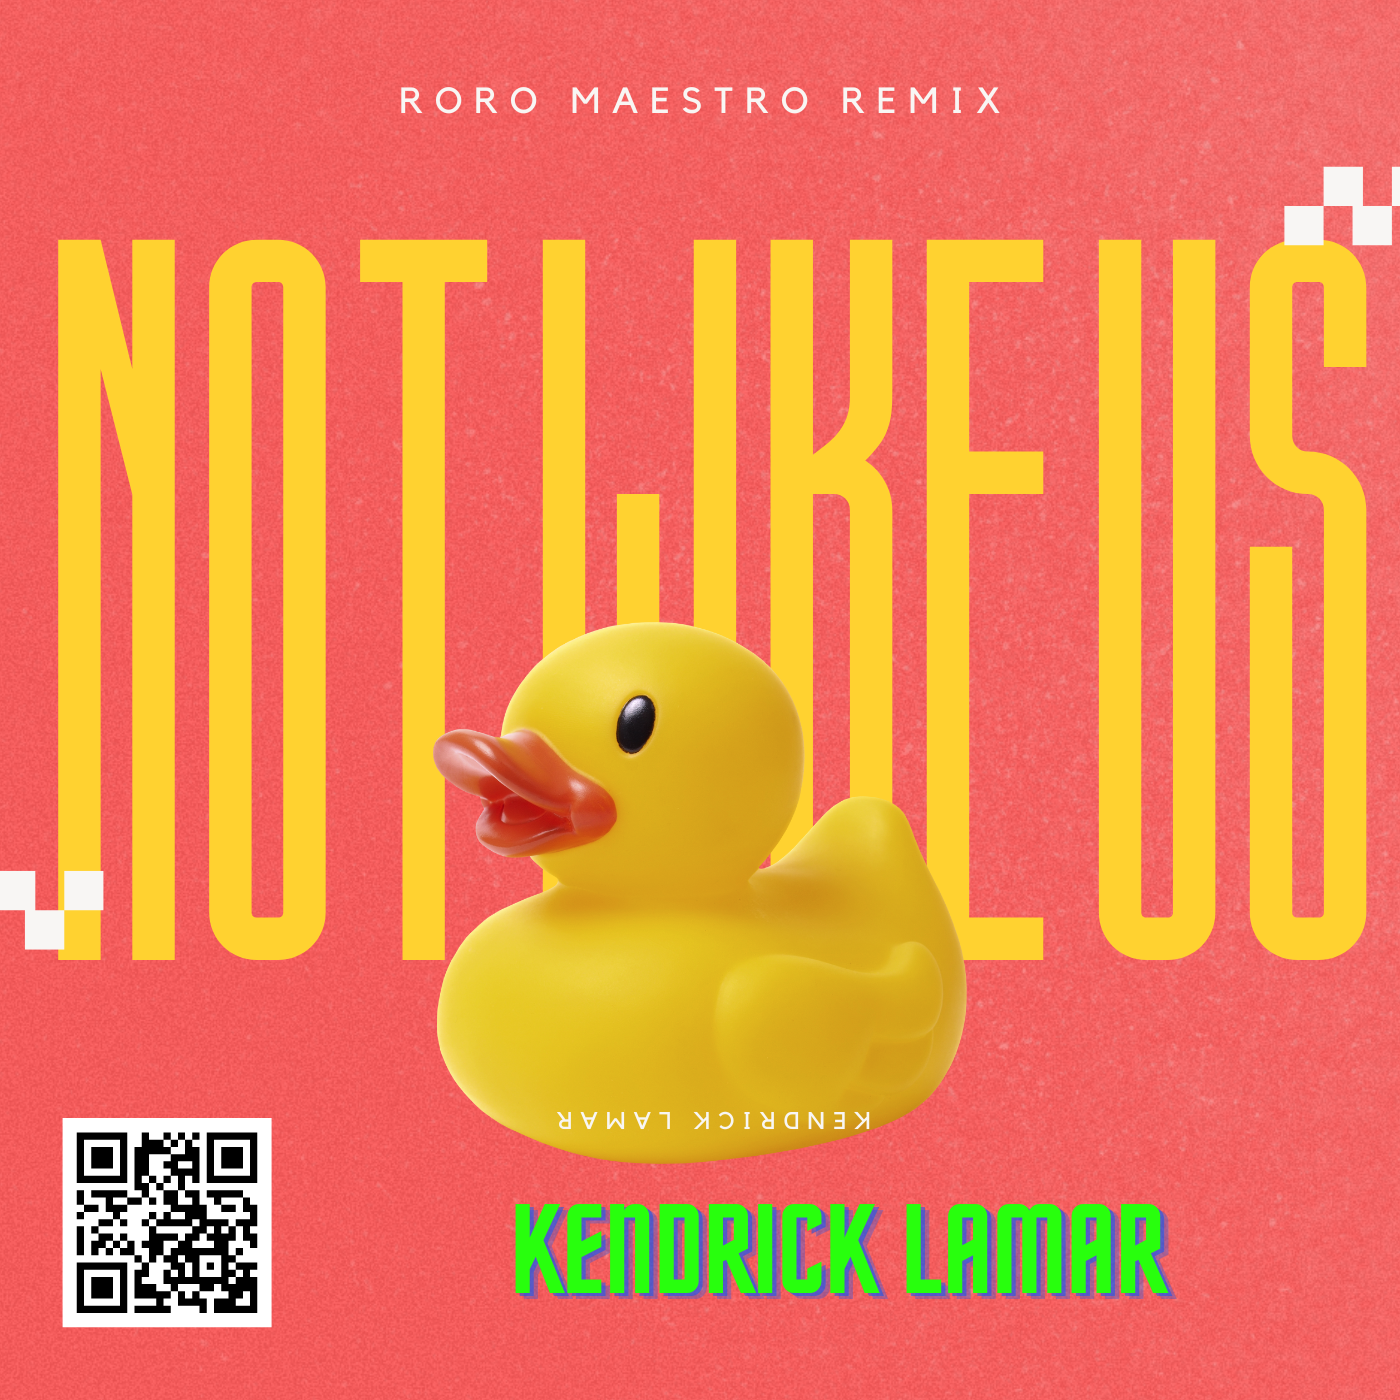 KENDRICK LAMAR - NOT LIKE THIS (Roro Maestro Remix)